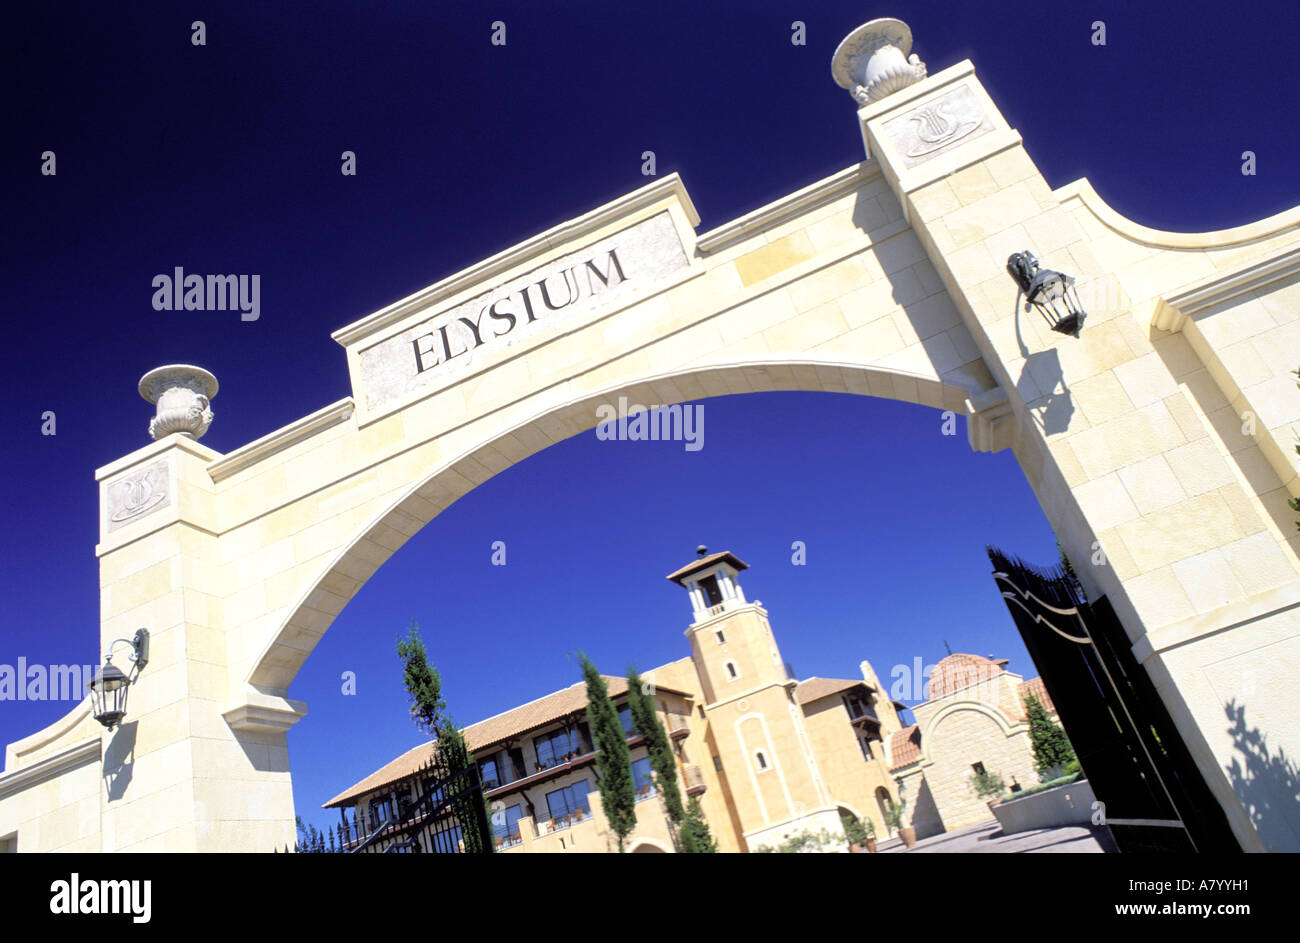 Chypre, Pafos Pafos, District, ville de l'hôtel Elysium, l'entrée dans un style hollywoodien Banque D'Images